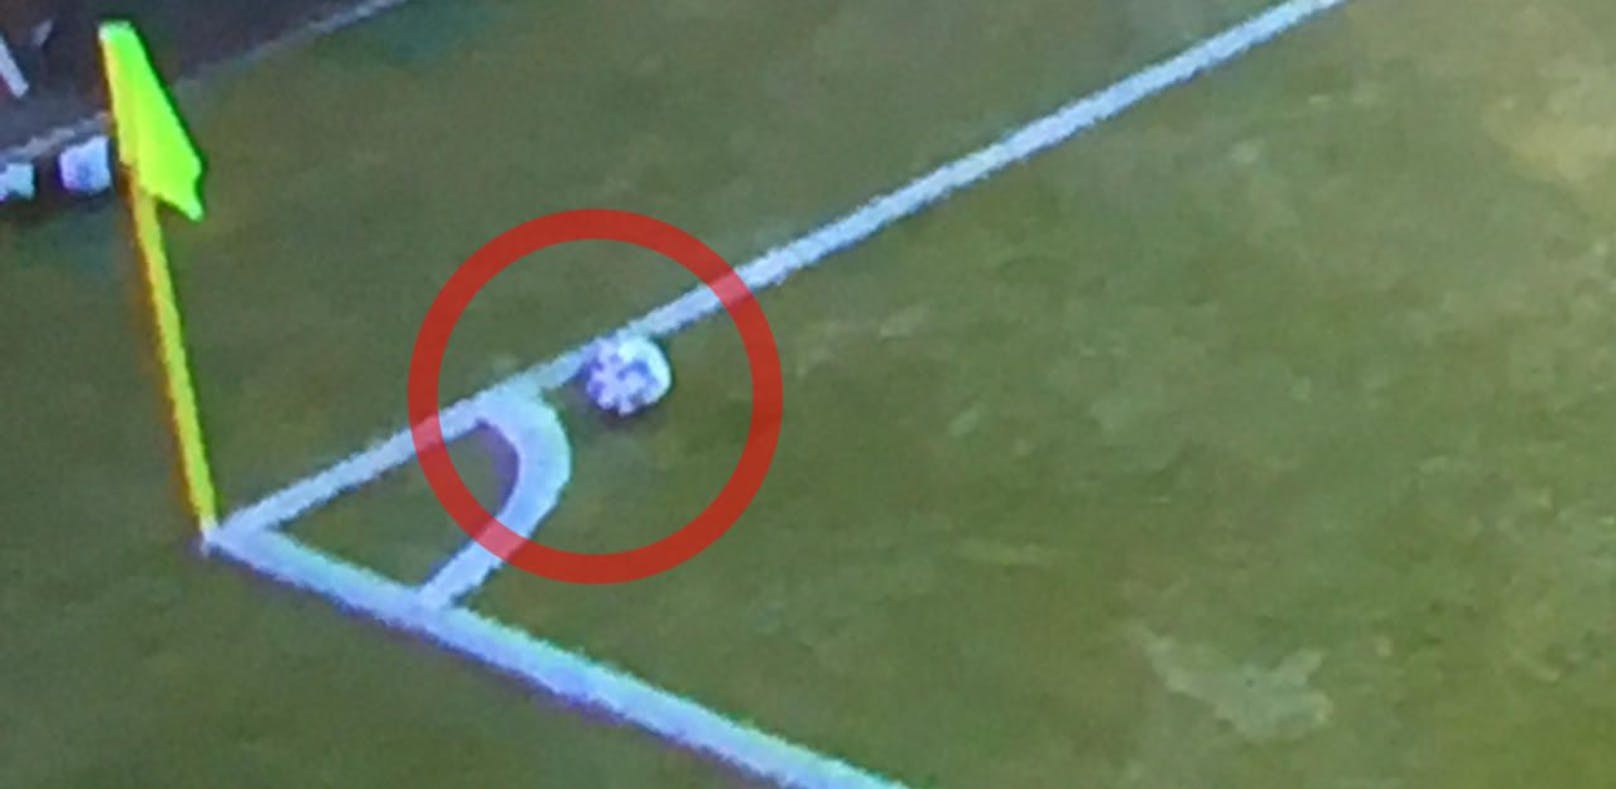 Der Fotobeweis: Eckball-Schütze Rep legte sich den Ball zu weit vor, das Tor zum zwischenzeitlichen 2:1 für Hartberg hätte nicht zählen dürfen. 